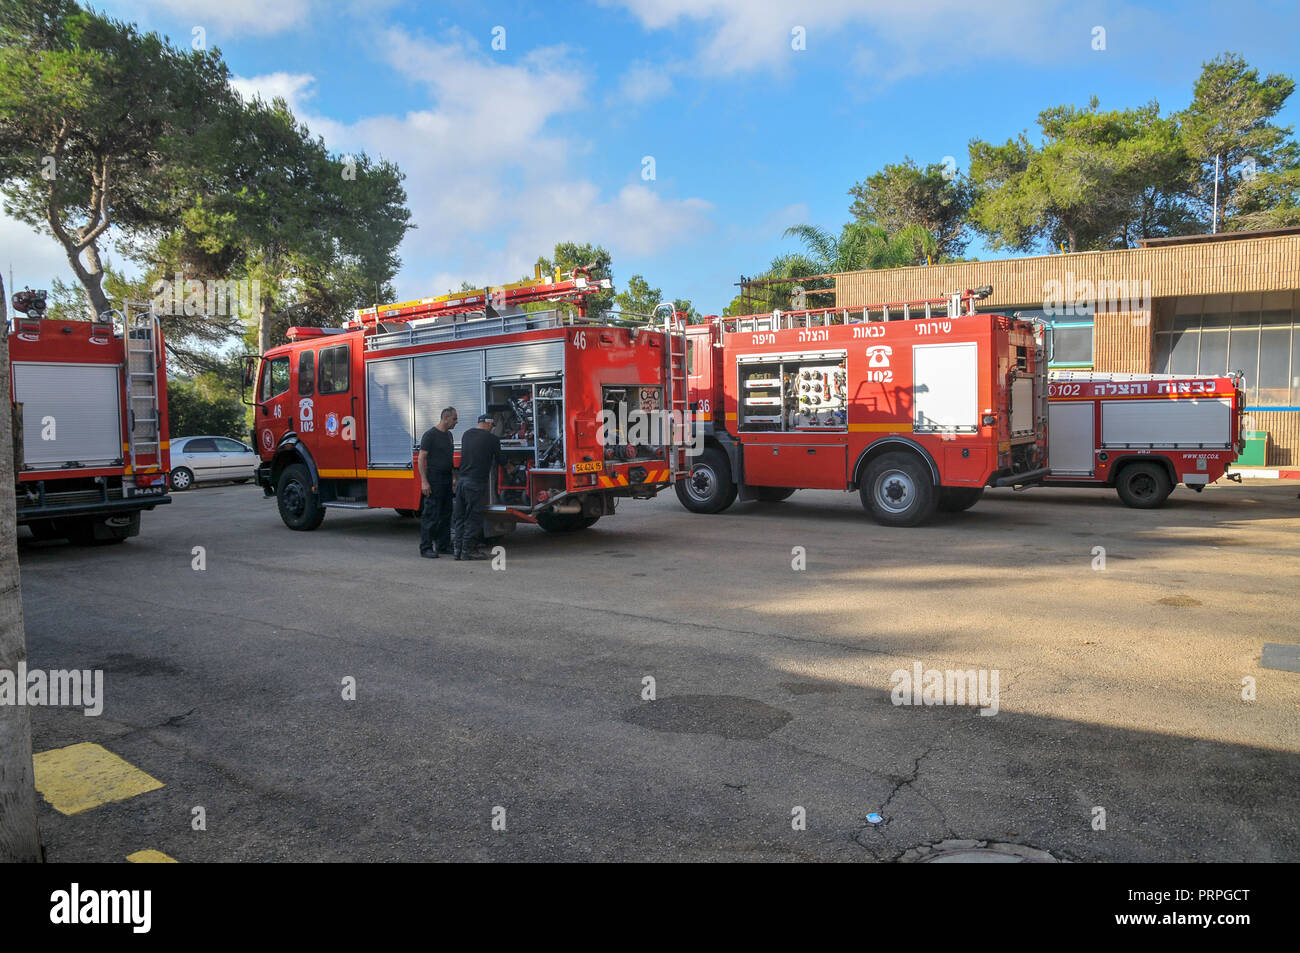 Les camions incendie dans un poste de pompiers, Haïfa, Israël Banque D'Images